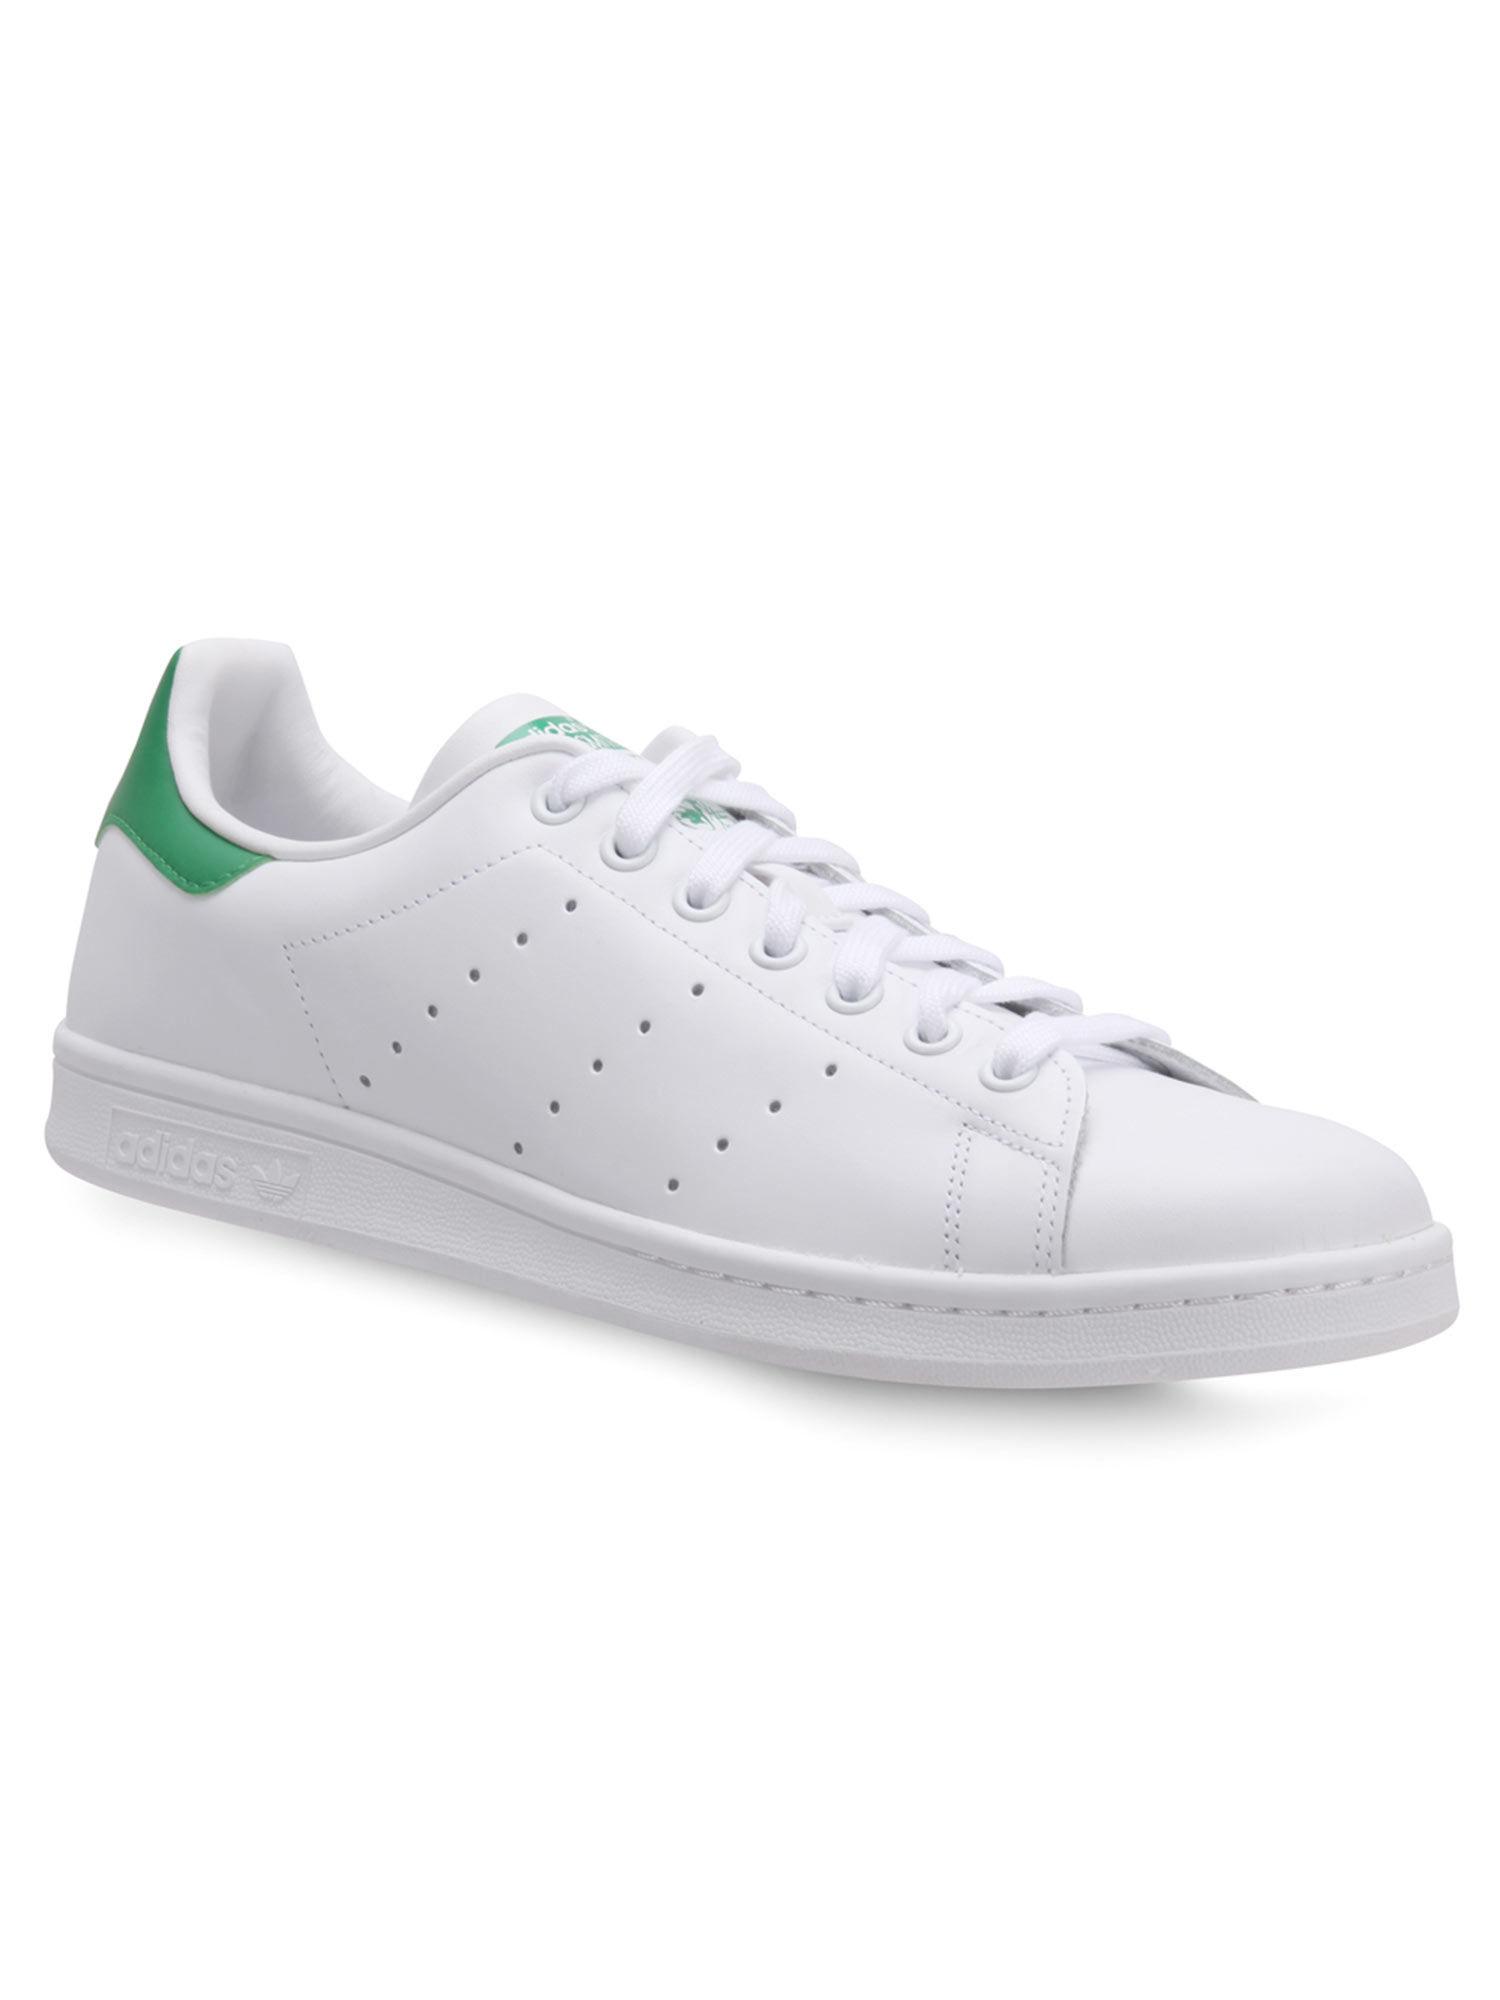 stan-smith-white-sneakers-(uk-3.5)